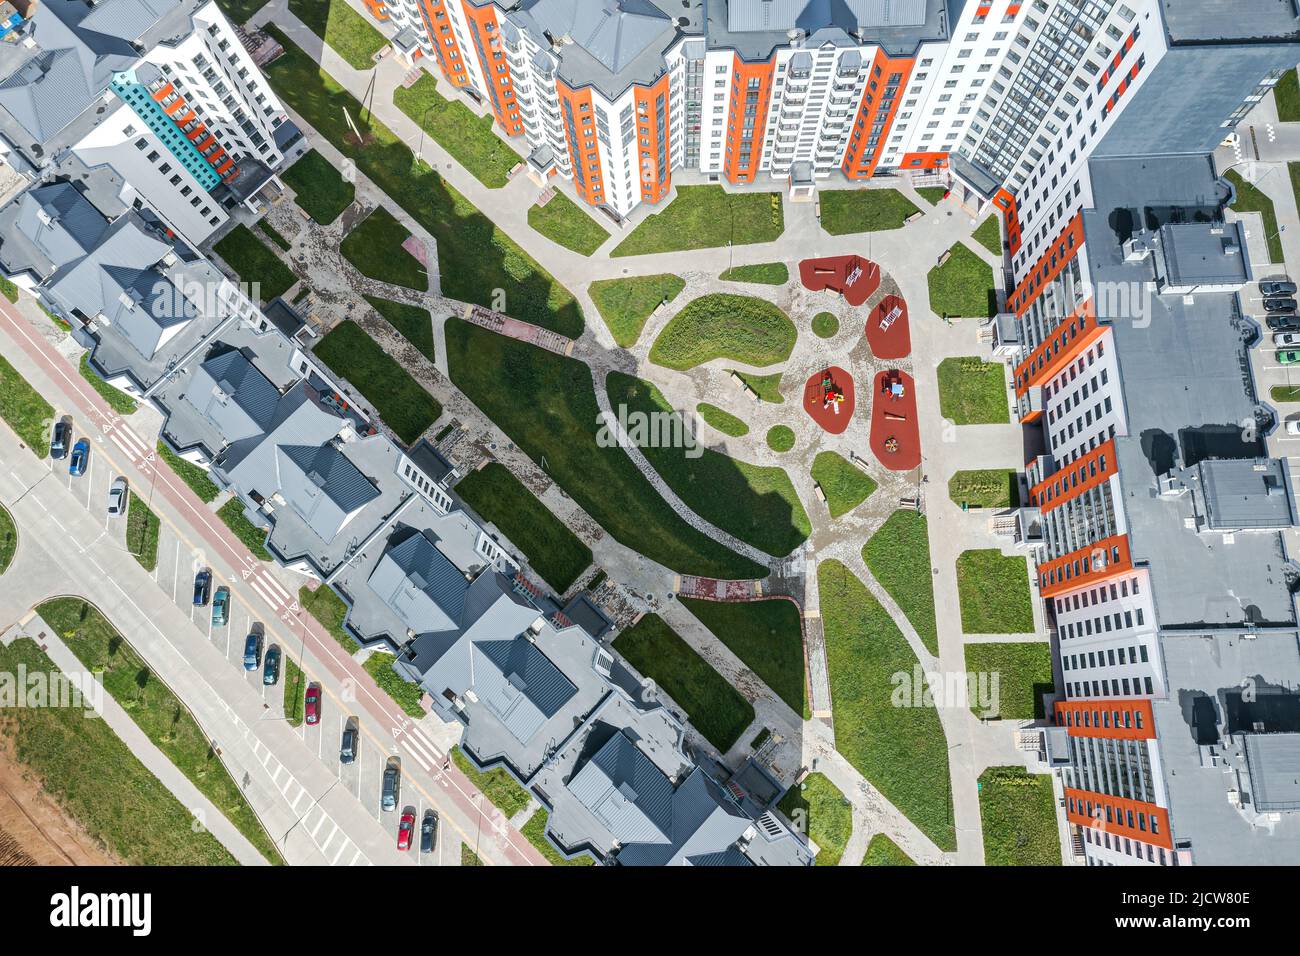 patio de modernos edificios residenciales con parque infantil. vista aérea desde aviones teledirigidos. Foto de stock